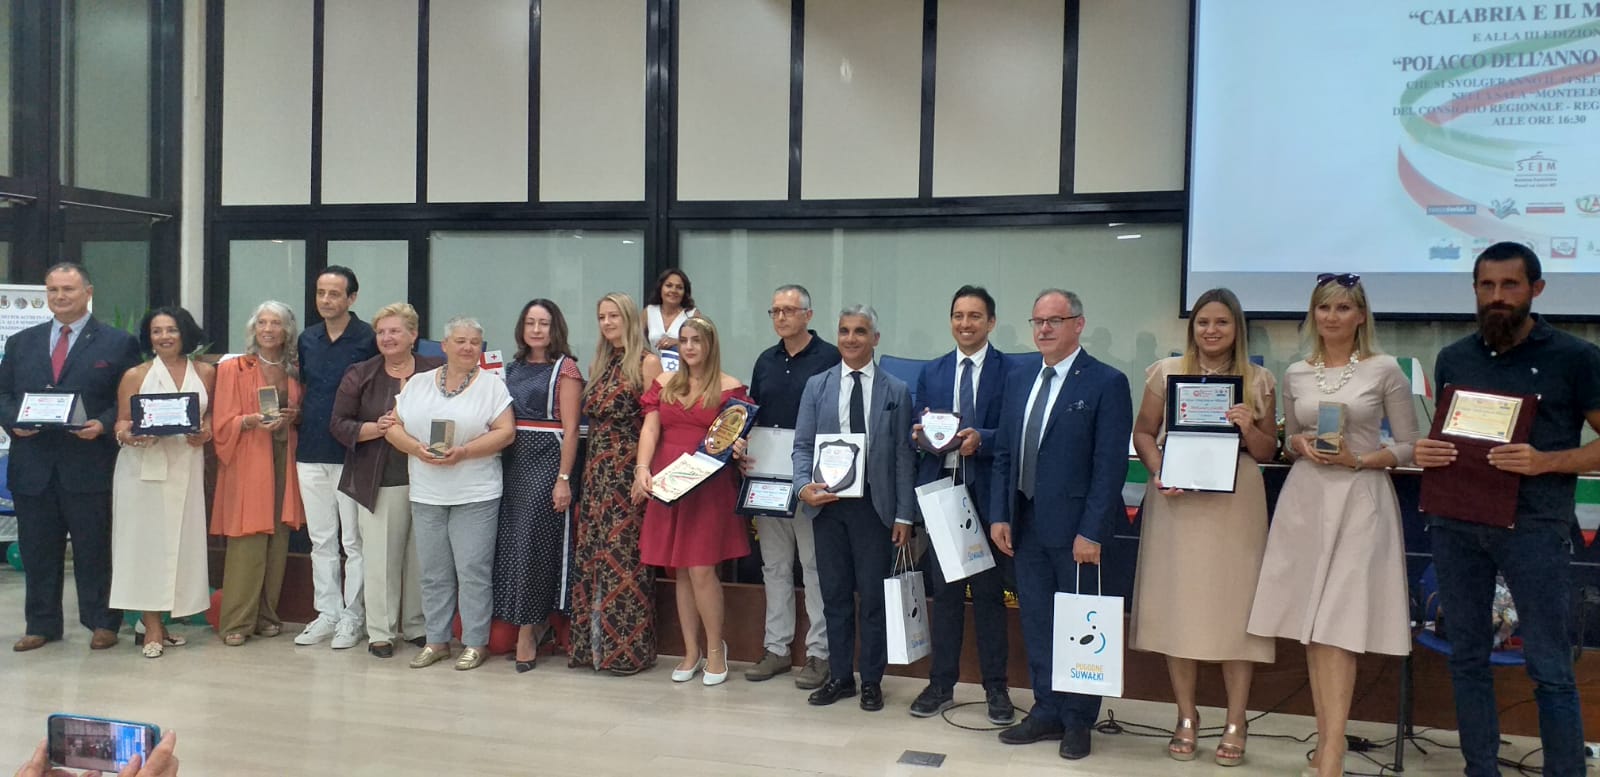 III Edizione del Premio Polacco dell’anno in Italia 2019